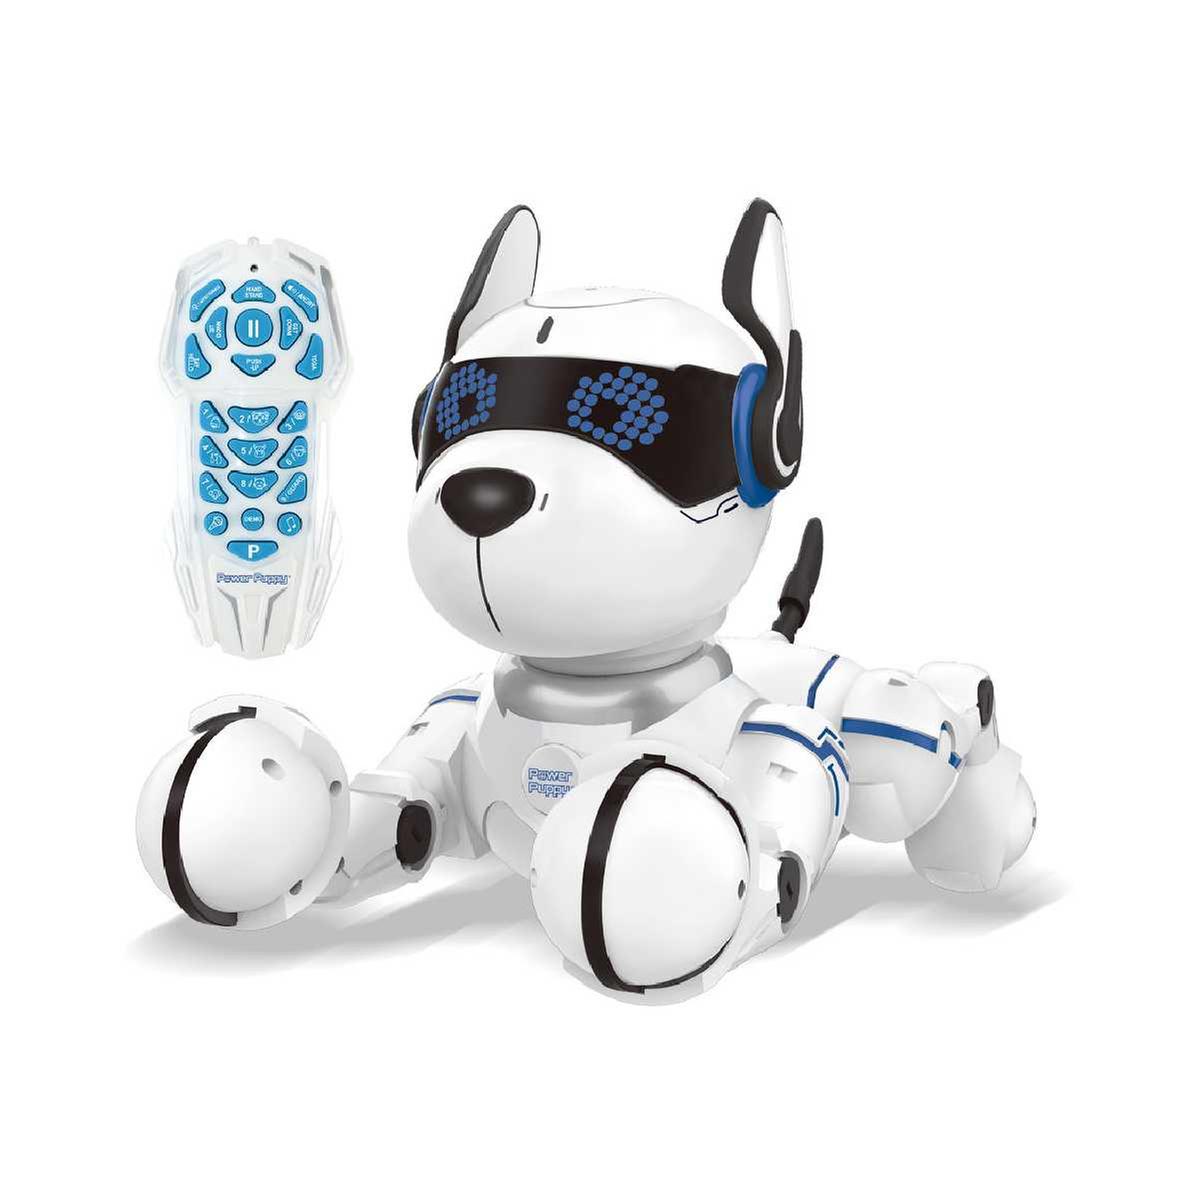 Lexibook - Power Puppy, mi perro interactivo | Lexibook | Toys"R"Us España